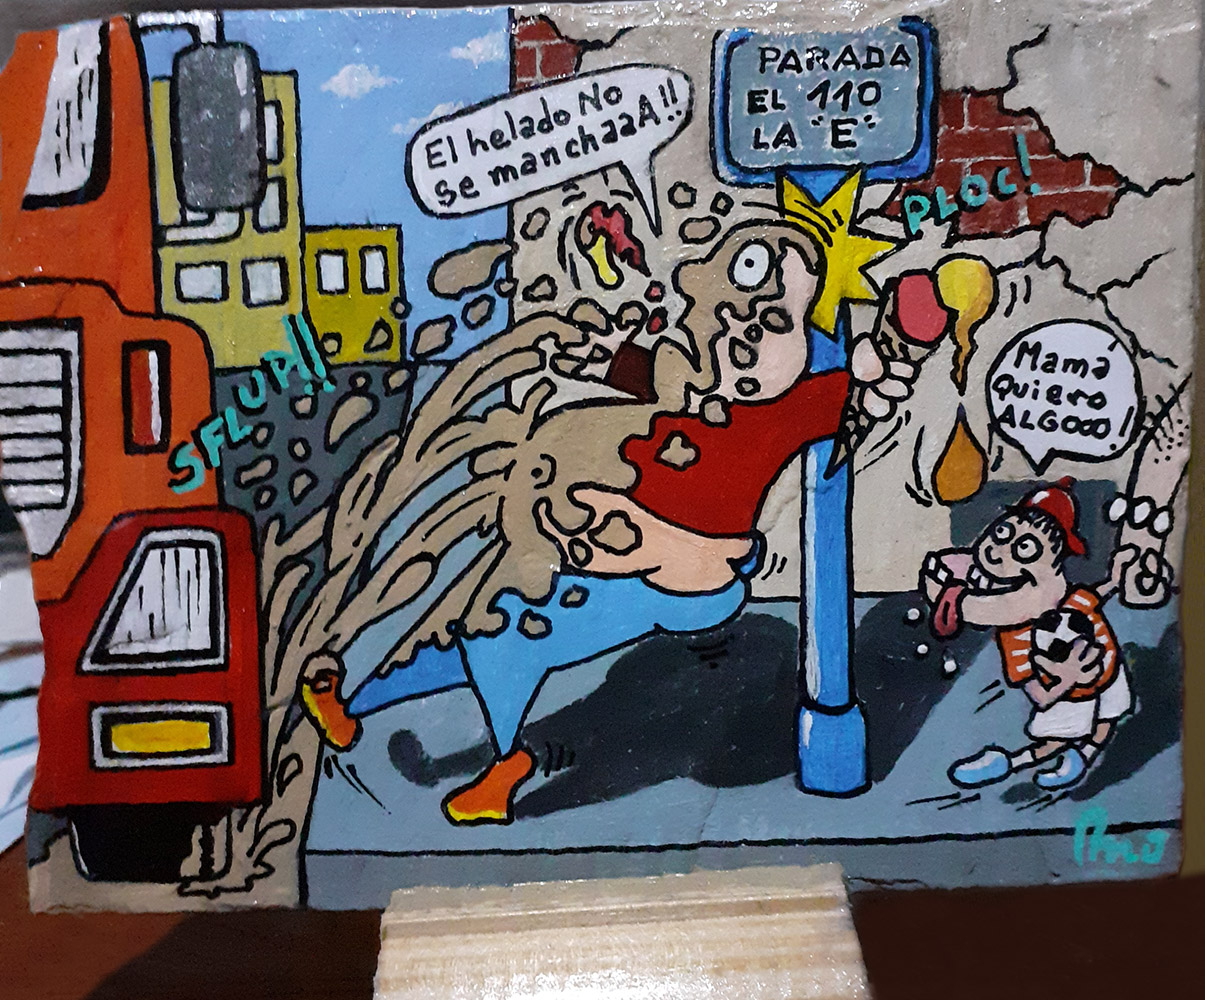 Pintura en laja serie "Andresito en problemas", autor Claudio Moda